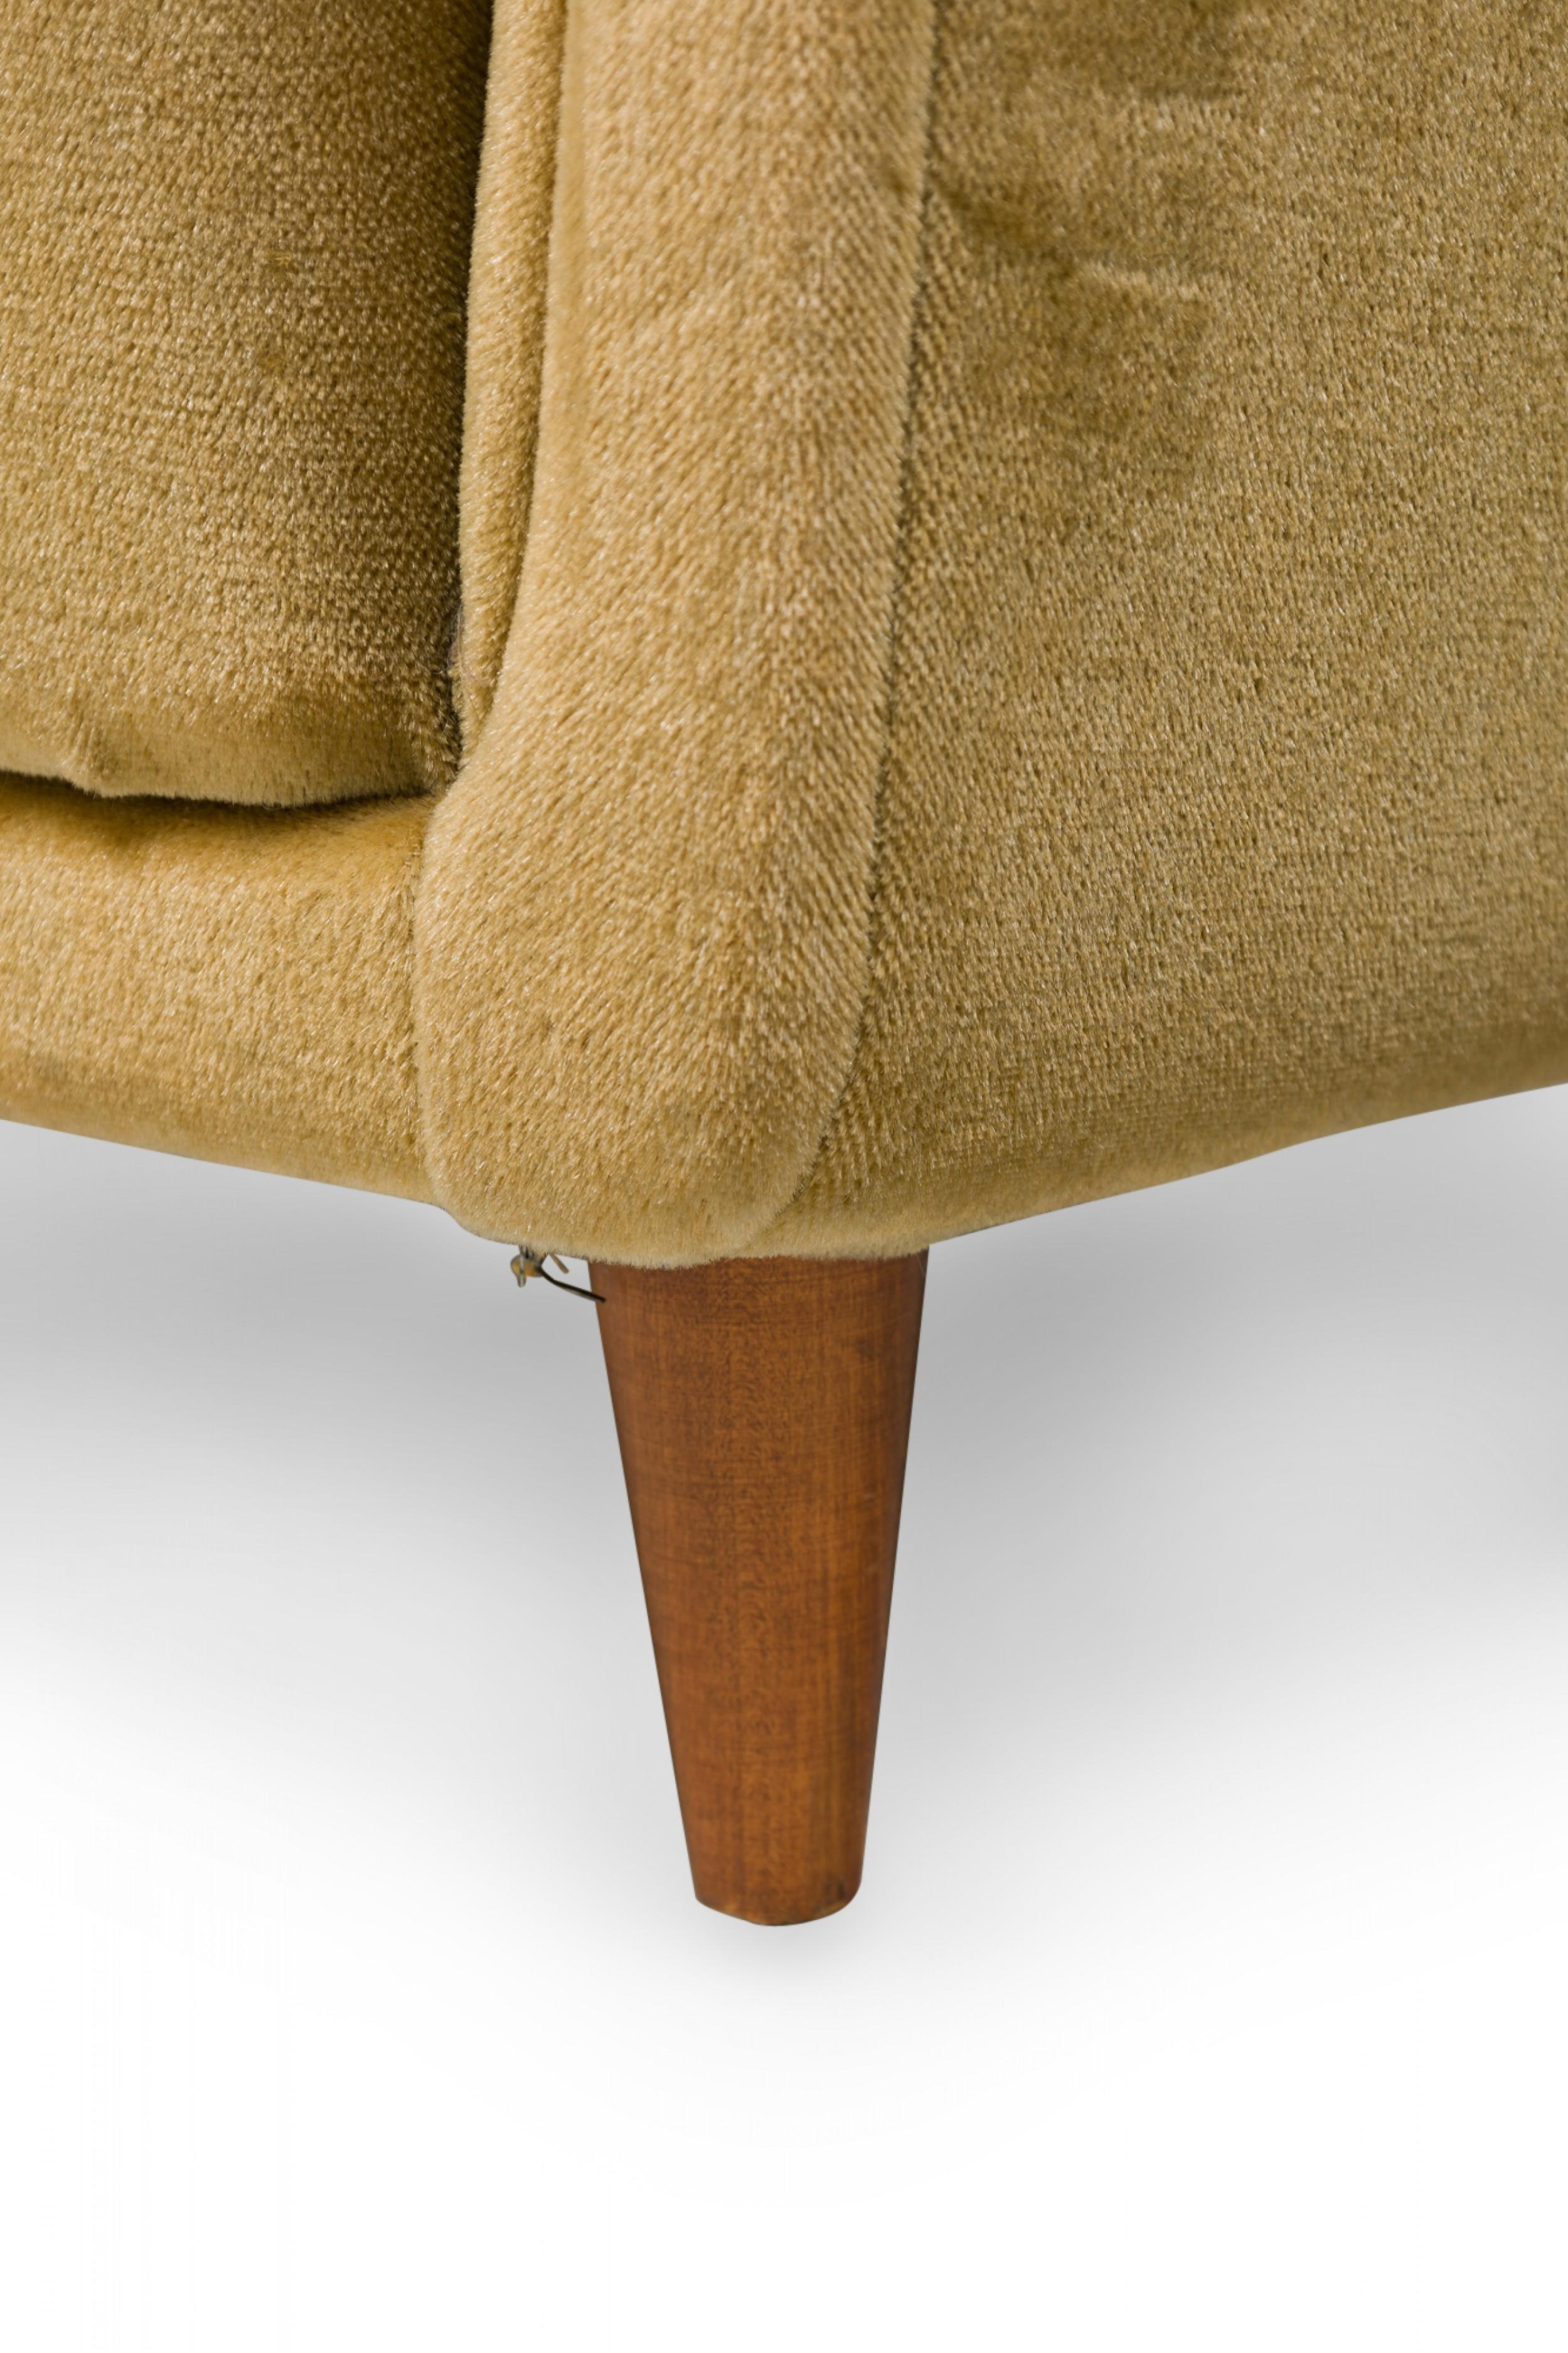 Pair of Midcentury Italian Modern Gold Velvet Upholstered Lounge / Armchairs For Sale 8